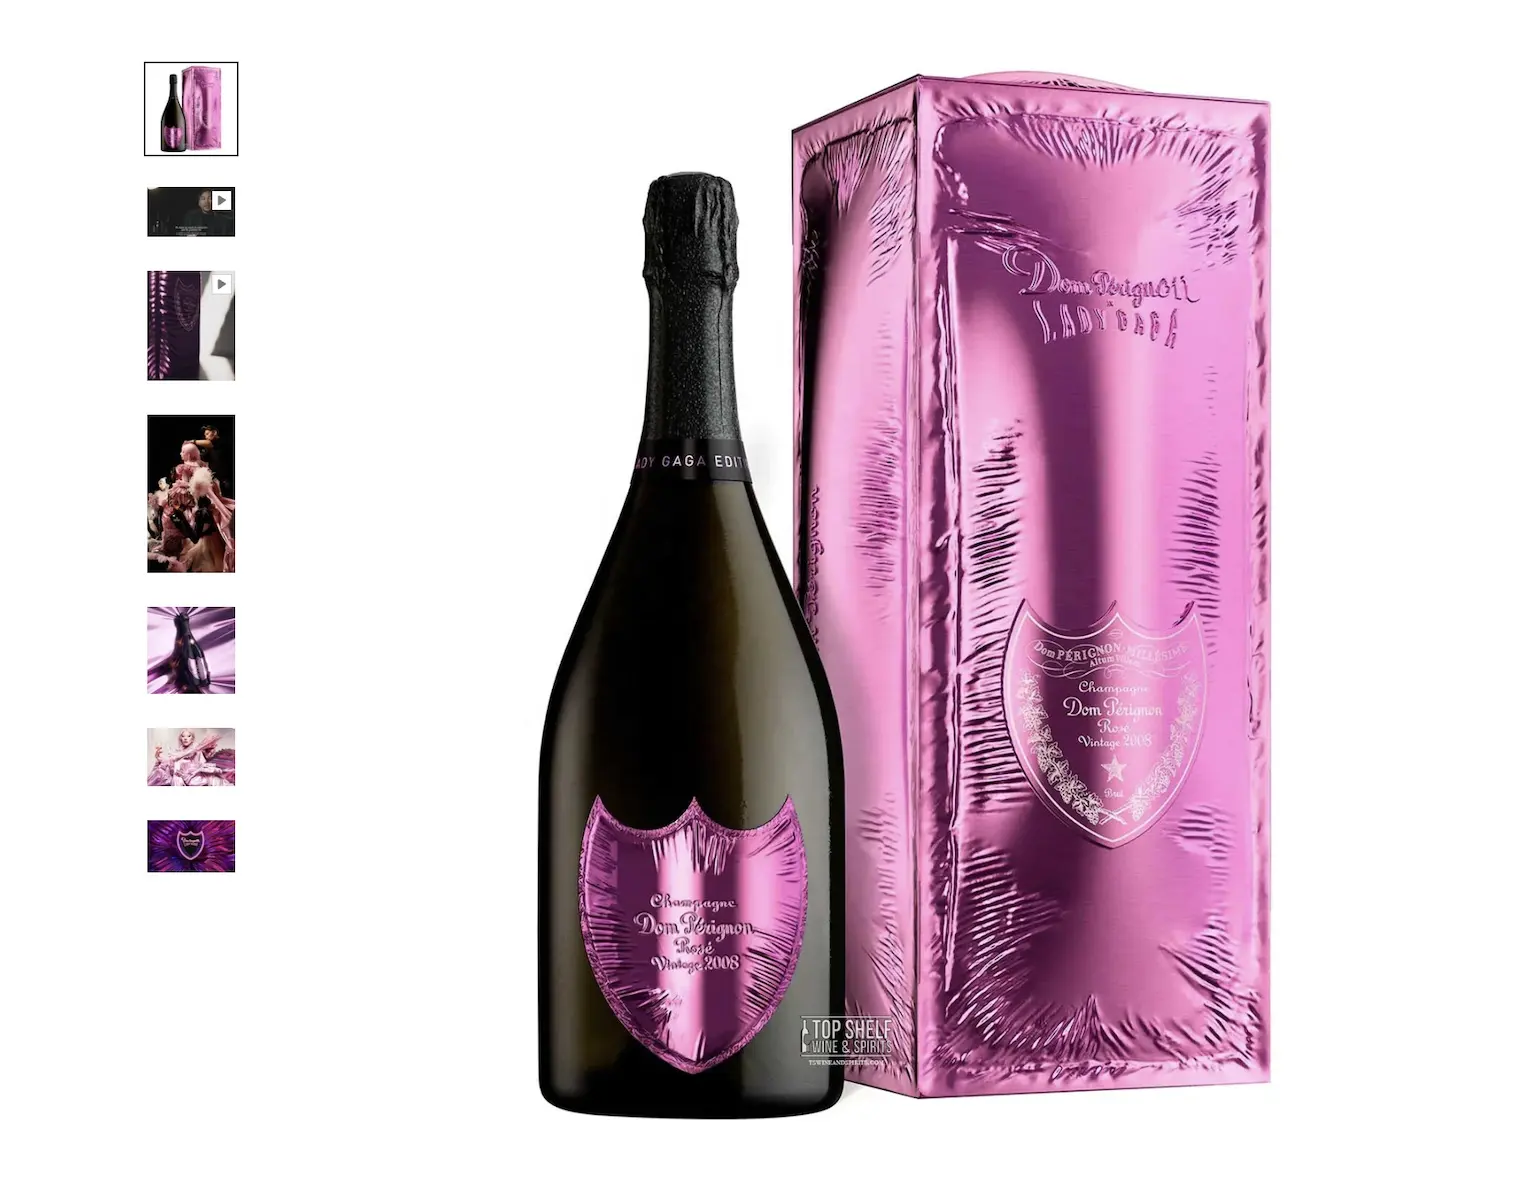 Kaufen Sie Don Perignon Dom Perignon Champagner Sekt Online Dom Perignon Brut Vintage Champagner Großhandel alkoholische Getränke